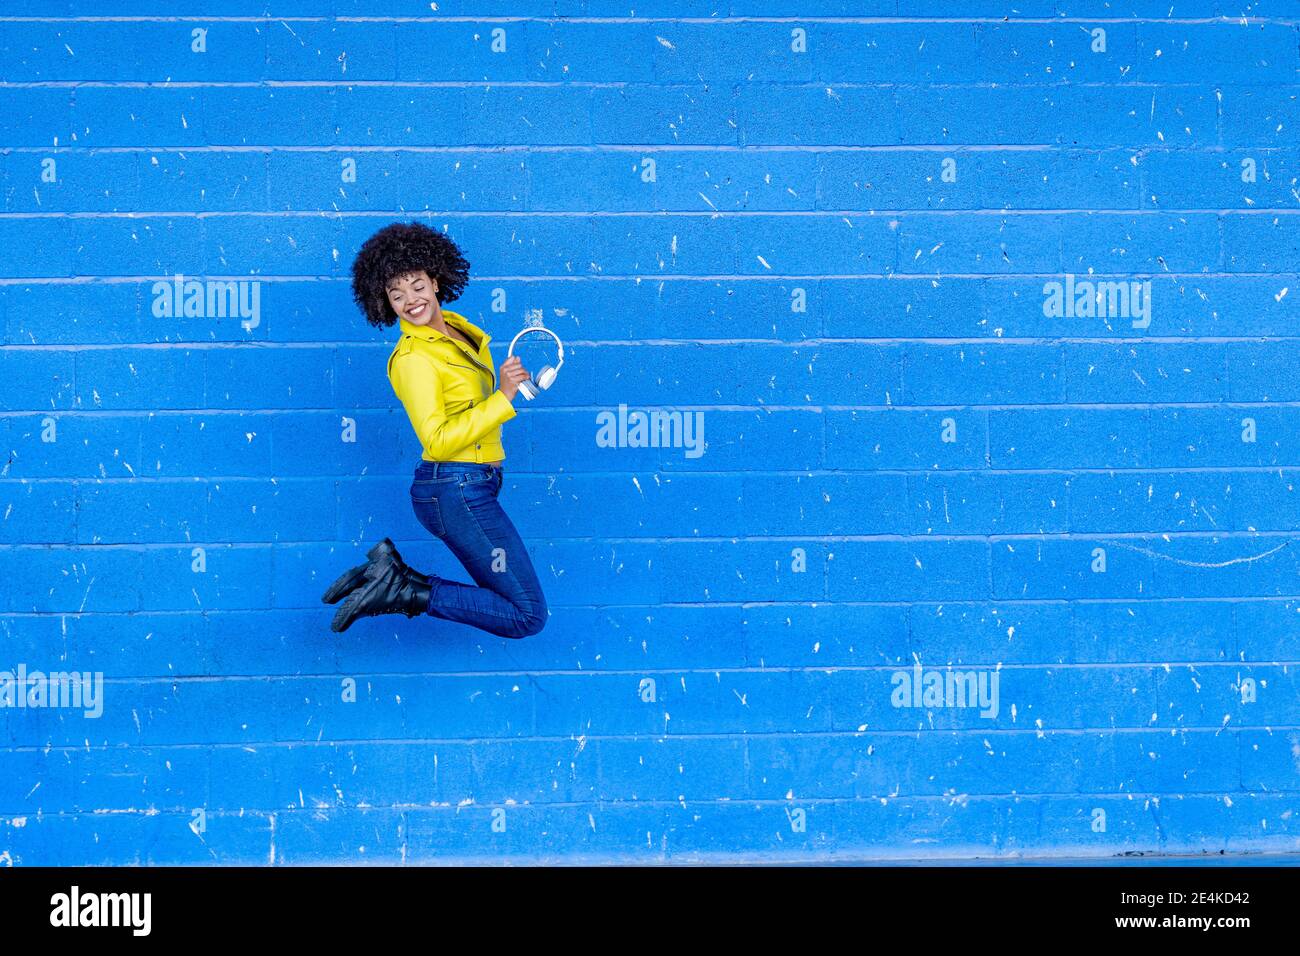 Fröhliche junge Frau hält Kopfhörer, während sie gegen die blaue Wand springt Stockfoto